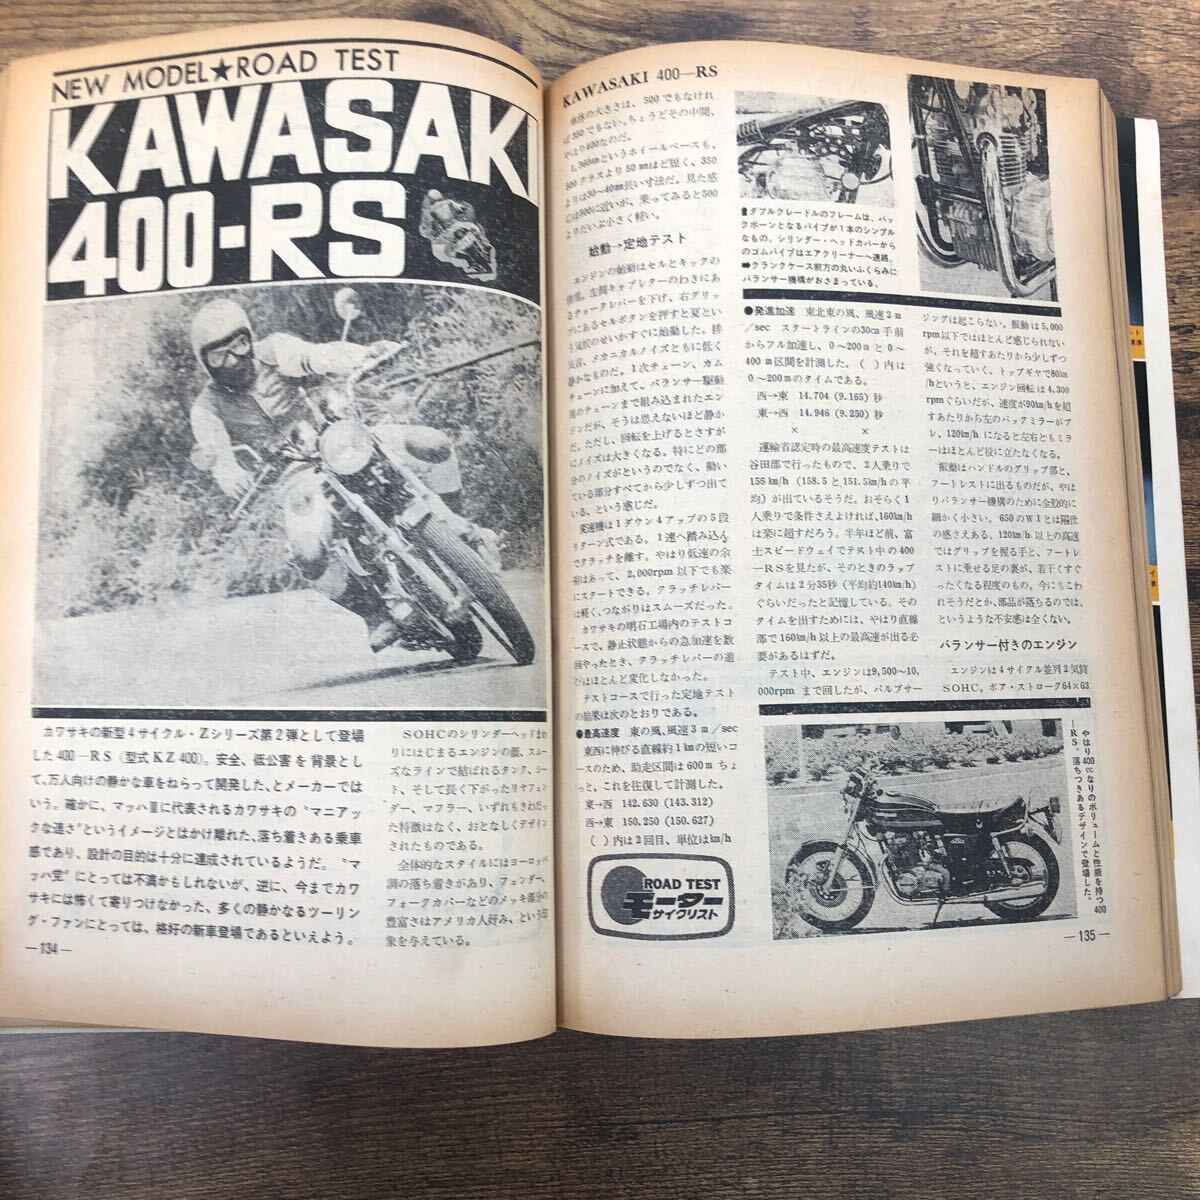 【バイク雑誌 1974.12発行】モーターサイクリスト 1970年代バイク雑誌の画像3